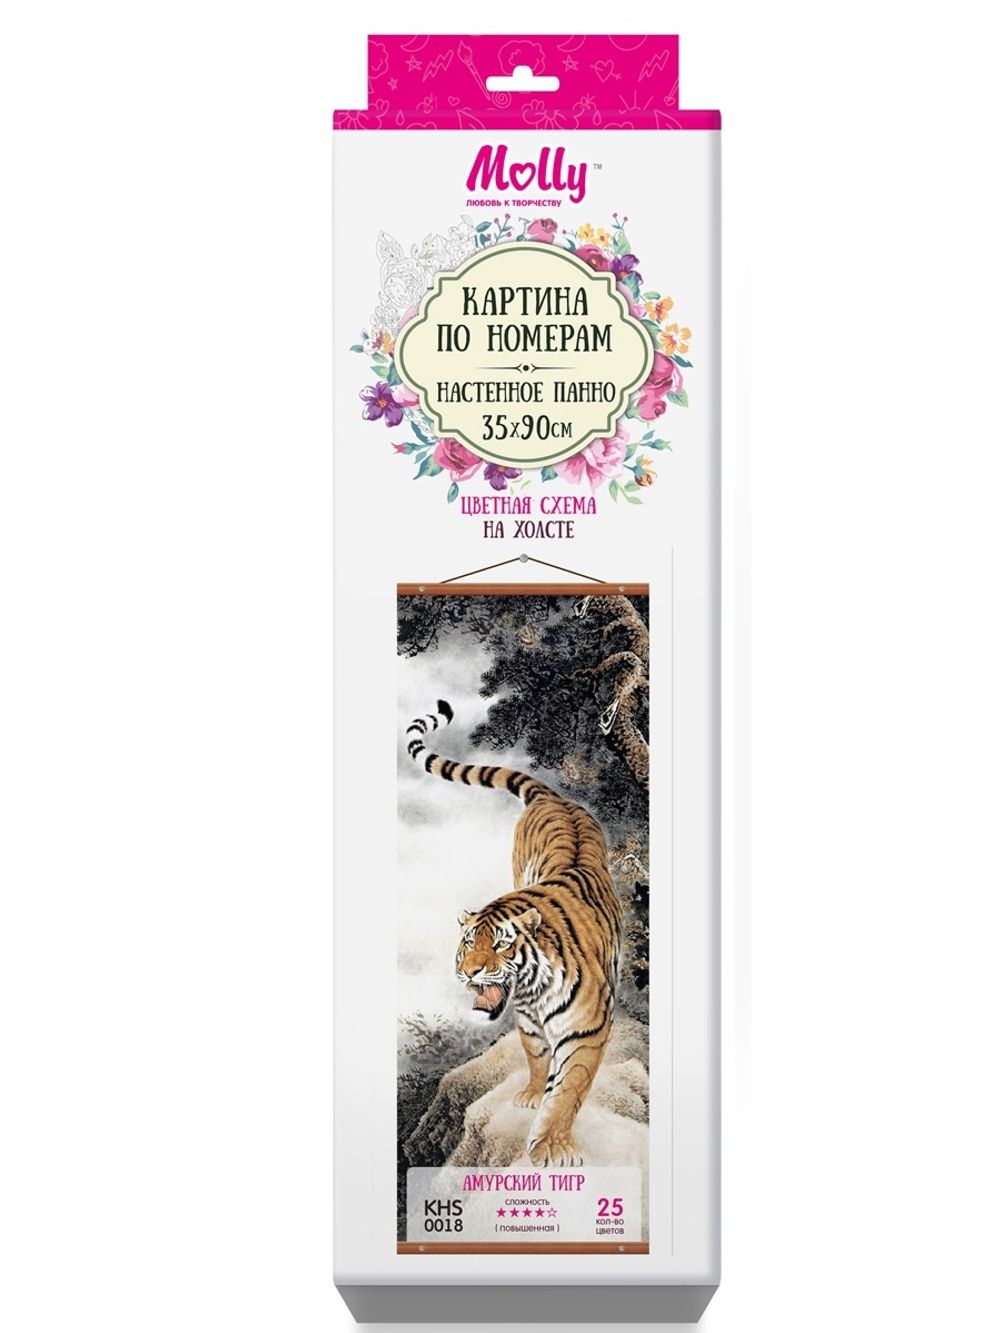 Поделка амурский тигр своими руками (16 фото) - фото - картинки и рисунки: скачать бесплатно